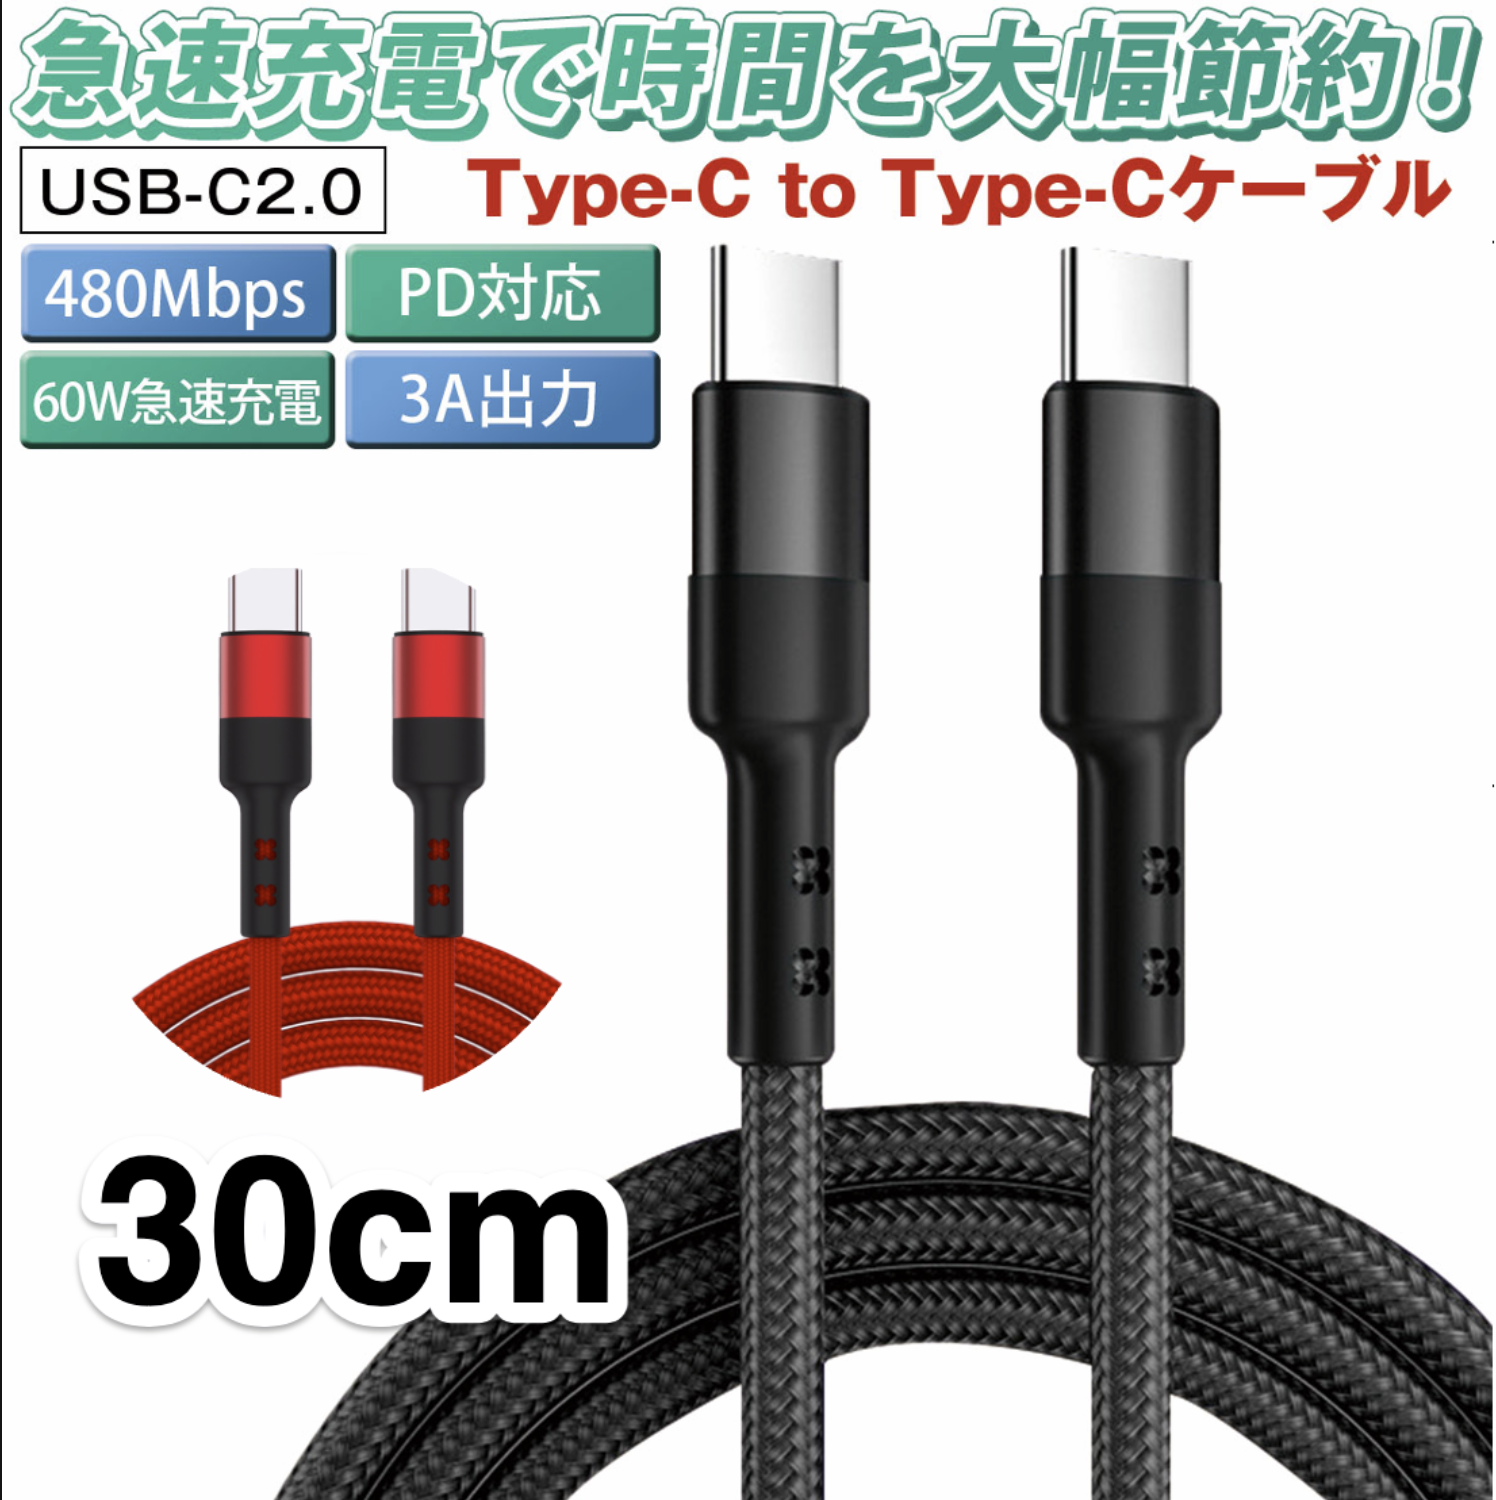 TYPE C кабель 30cm модель C USBC USB2.0(USB C to USB C ) 60W 3A мощность . внезапный скорость зарядка QC4.0 соответствует данные пересылка максимальный 480Mbps сетка короткий .